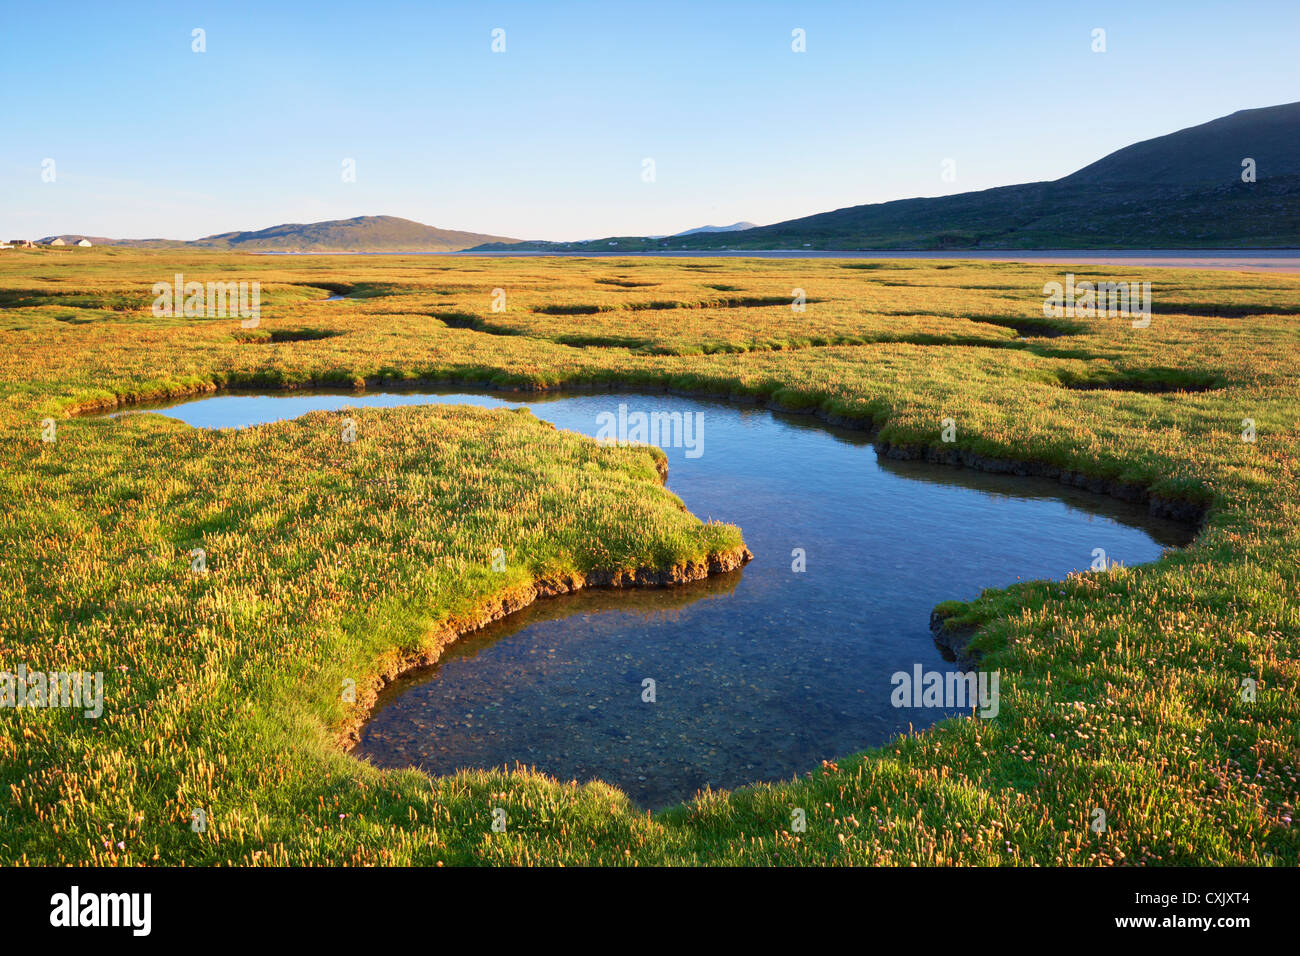 Gezeitenbecken in Salz-Sumpf, Insel Harris, äußeren Hebriden, Schottland Stockfoto